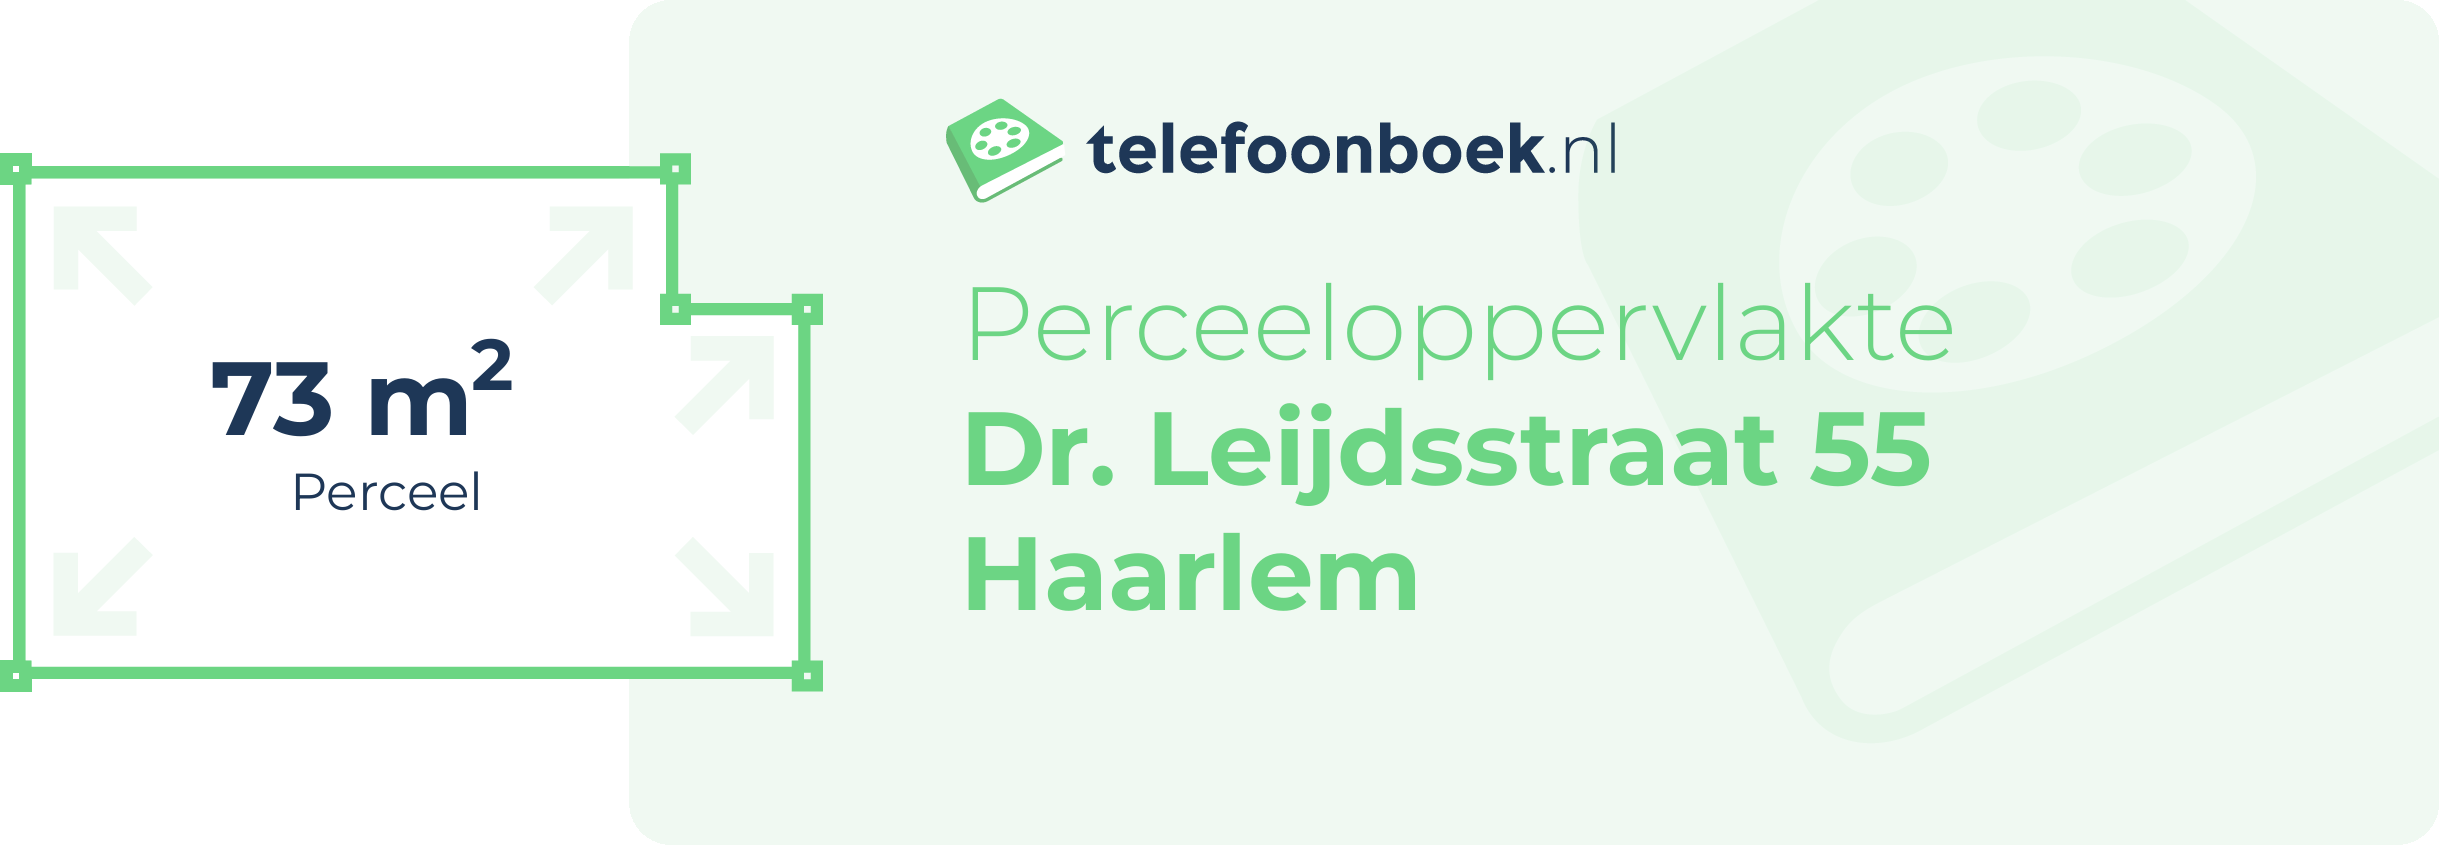 Perceeloppervlakte Dr. Leijdsstraat 55 Haarlem